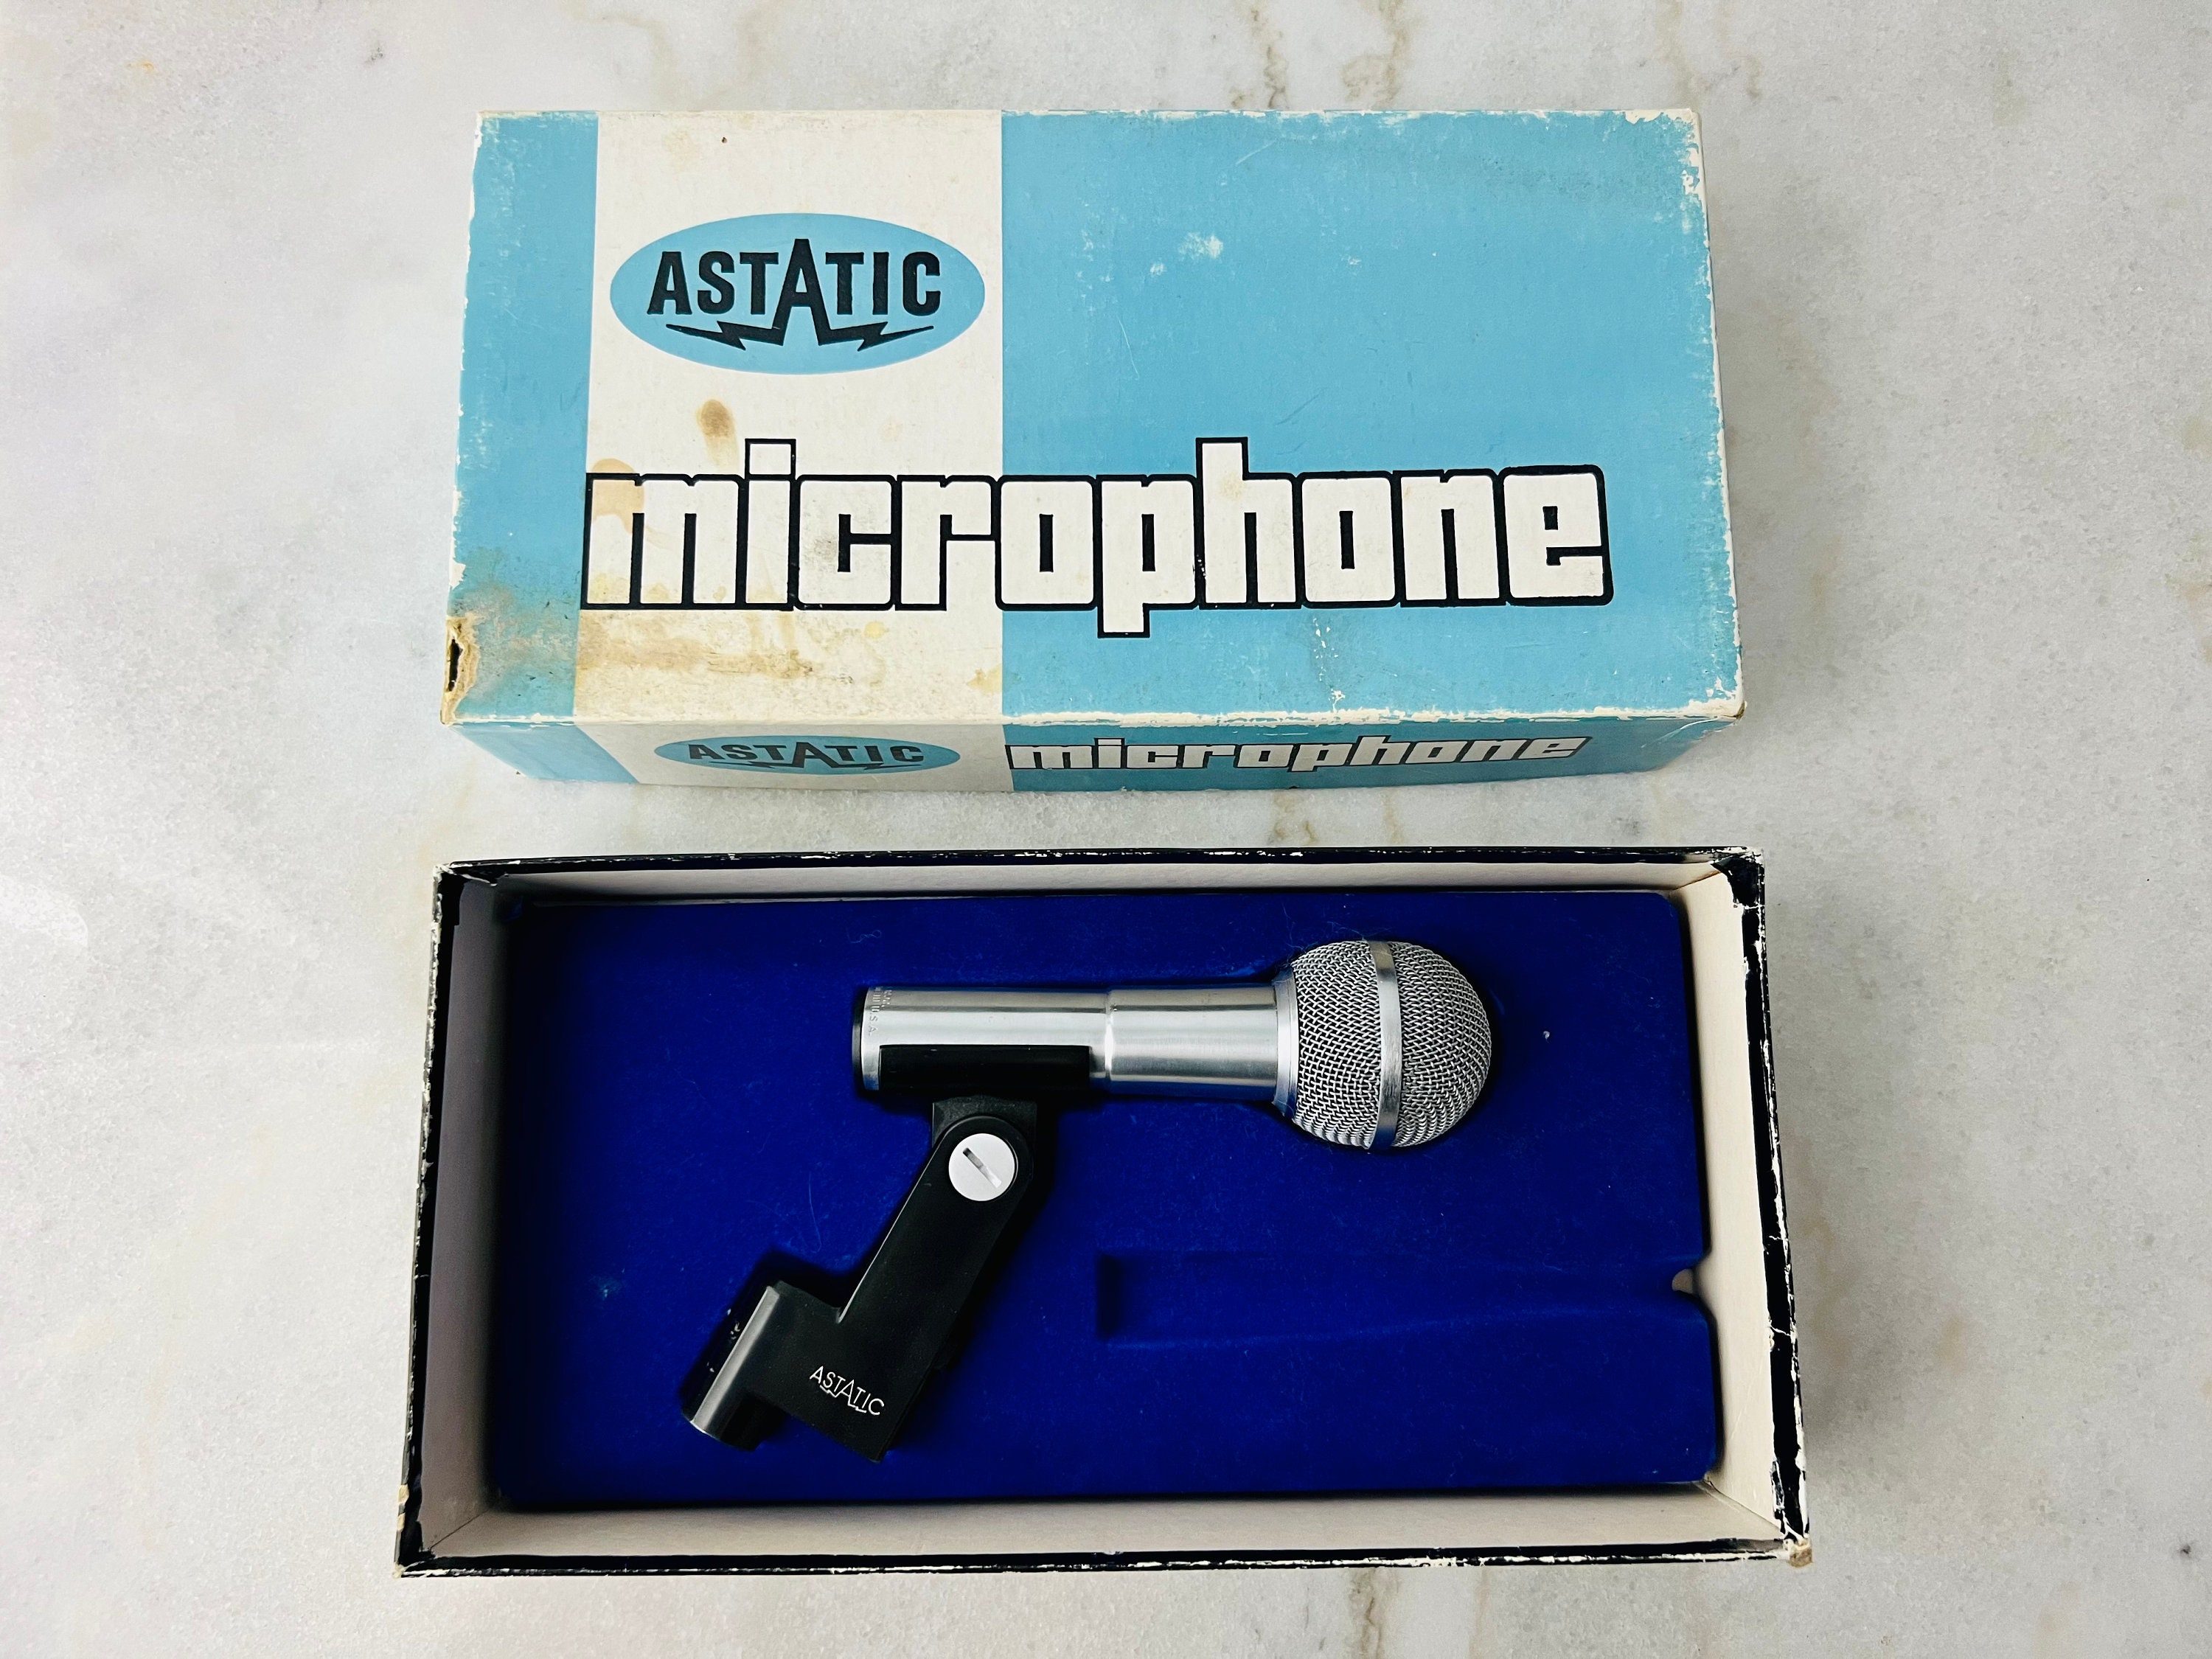 Astatic 1950's vintage microphone